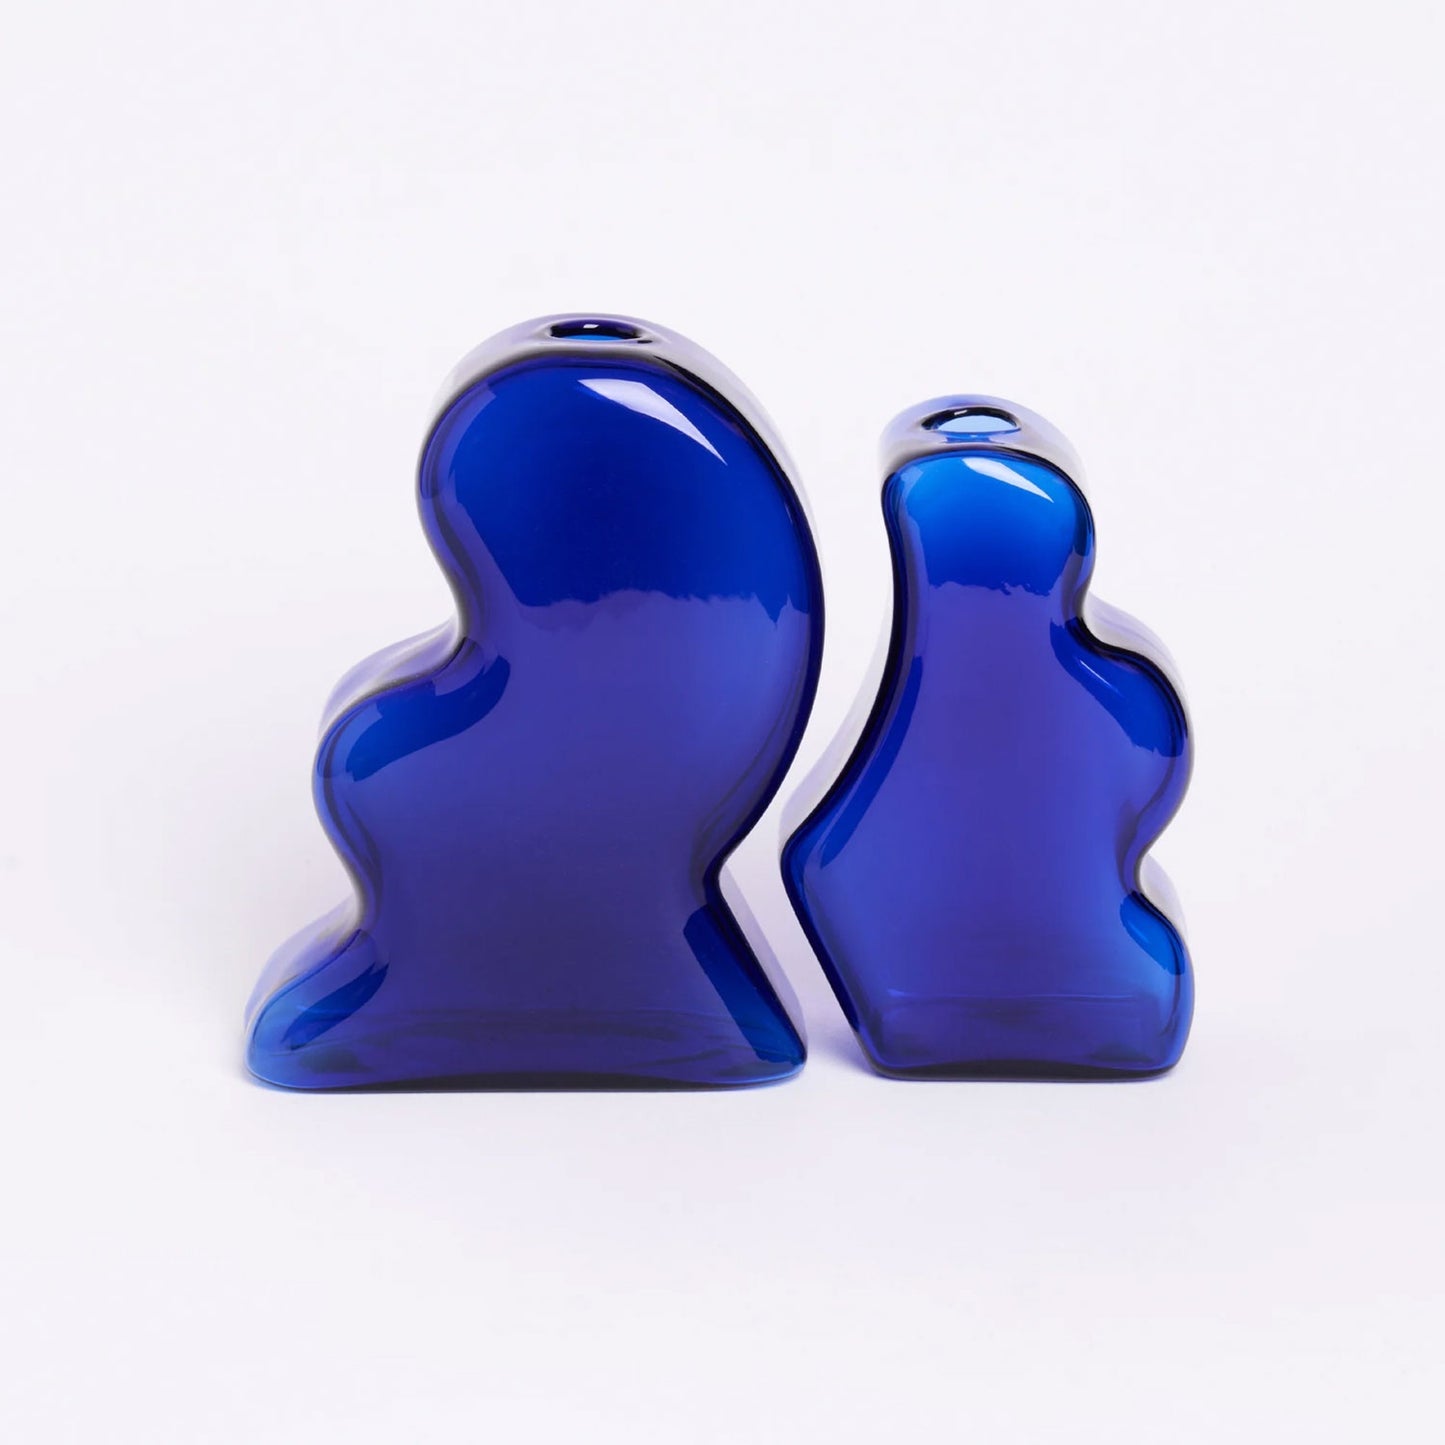 Interlocking Vase by Manu Nanu - Cobalt Blue